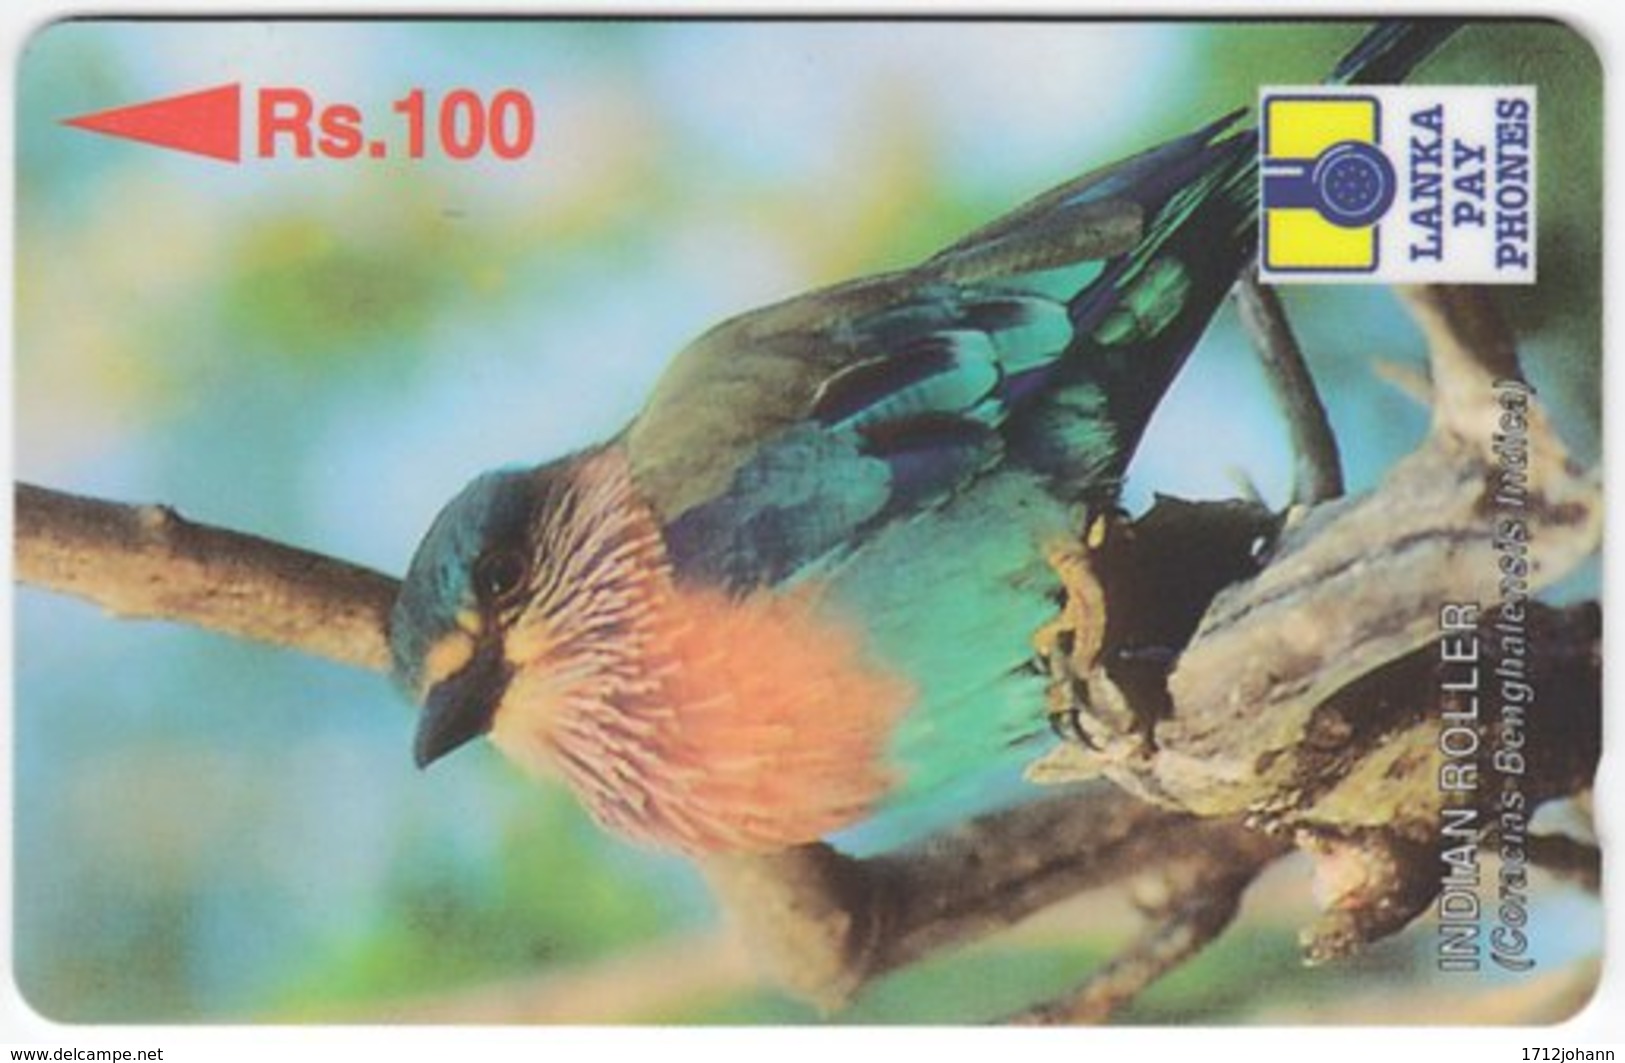 SRI LANKA A-080 Magnetic LankaPayPhones - Animal, Bird - 35SRLB - Used - Sri Lanka (Ceylon)